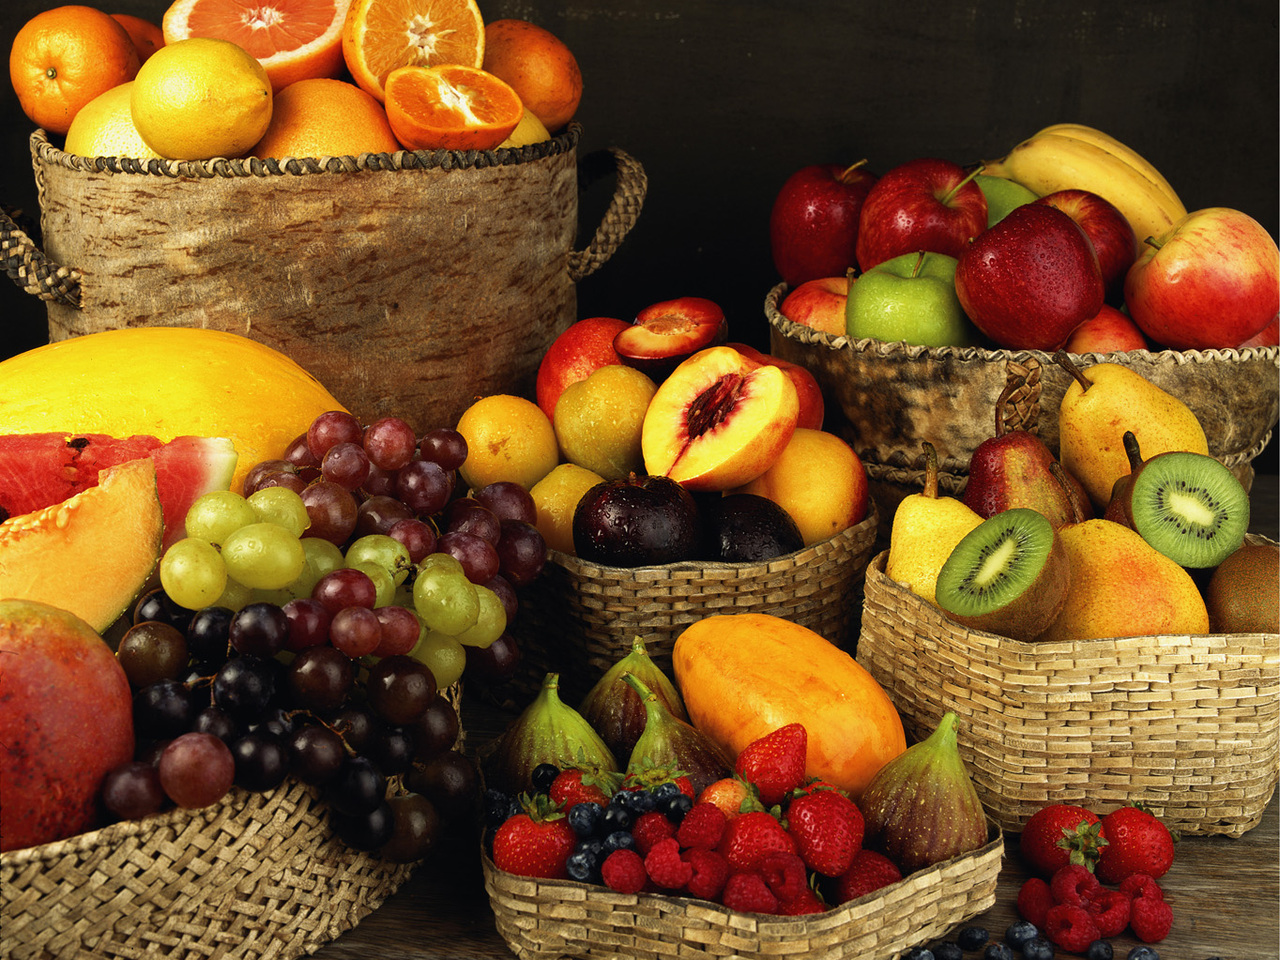 Сейчас на прилавках магазинов зимой можно увидеть большое разнообразие свежих фруктов и даже ягод. Однако не следует сильно баловаться несезонными продуктами. Всё хорошо в меру!